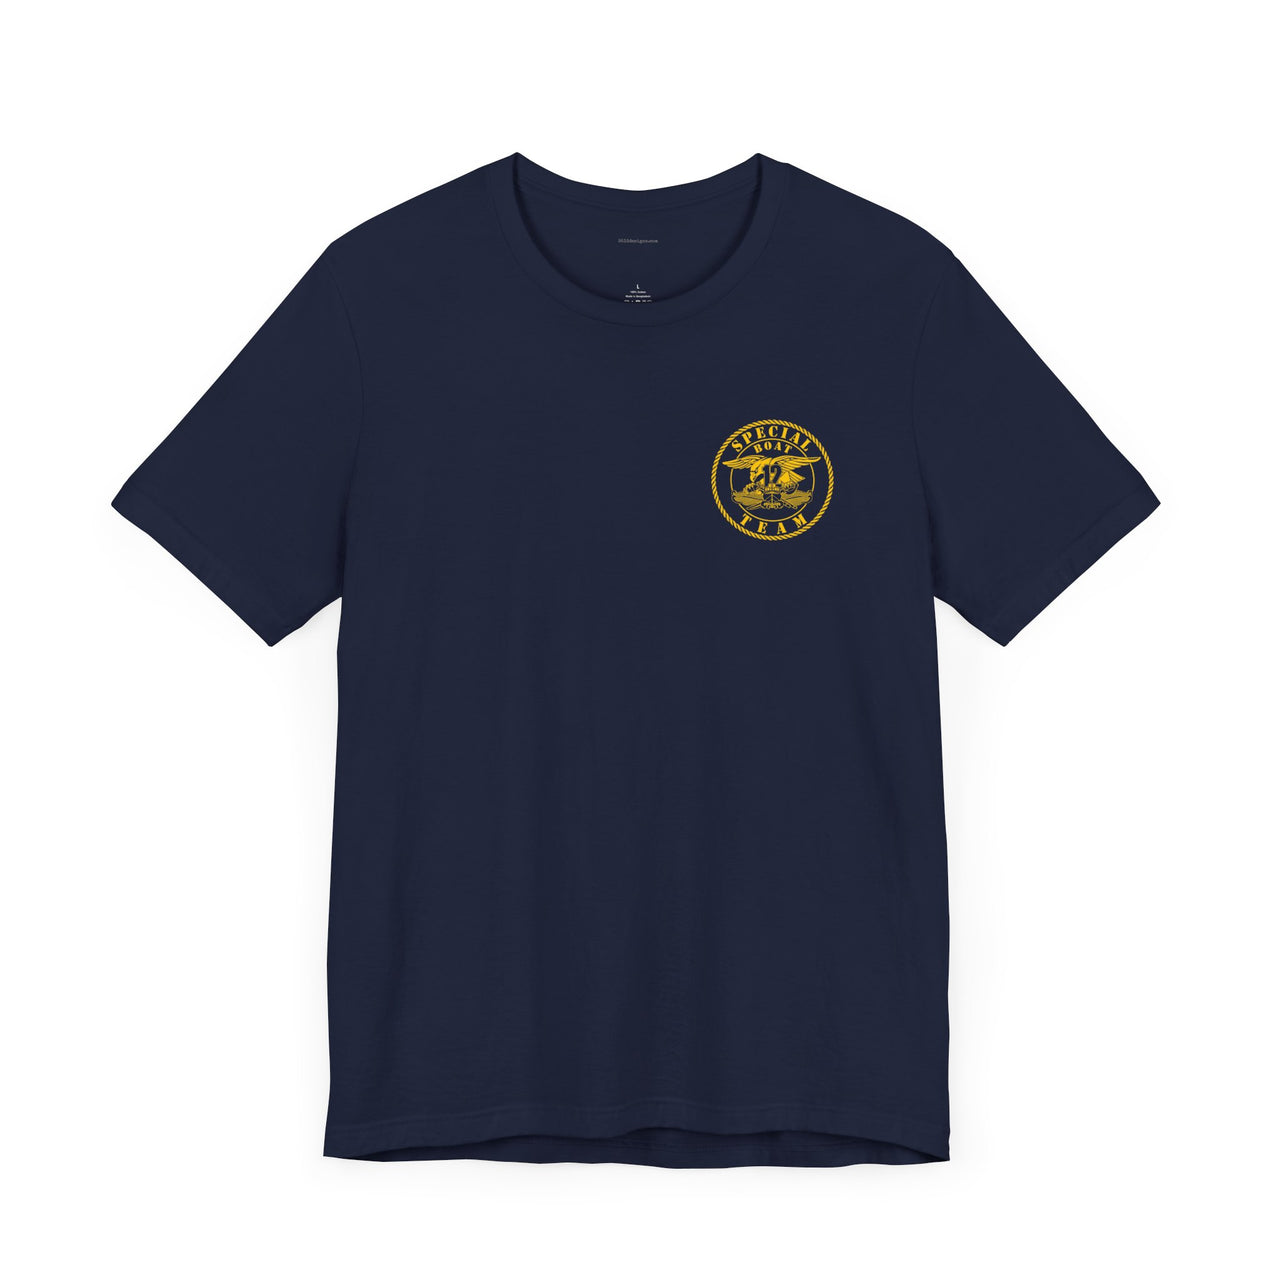 SBT 12 Elite T-Shirt –Gold Collection, v1